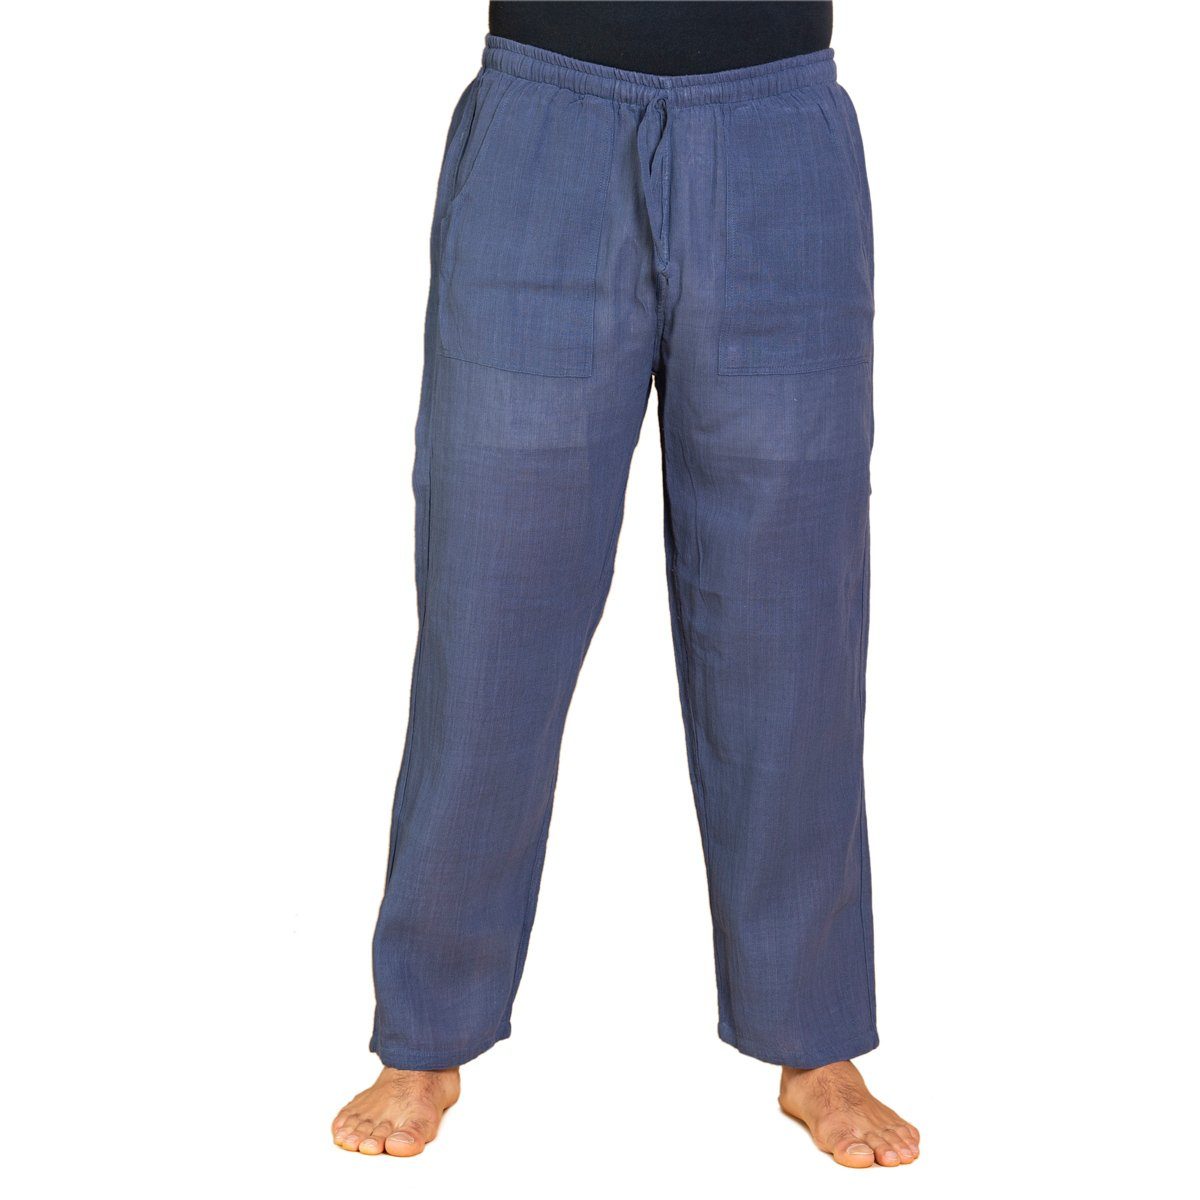 PANASIAM Wellnesshose Handgewebte Baumwollhose 'K' in verschiedenen Designs Freizeithose leger geschnitten Sommerhose Relaxhose Blau | Weite Hosen